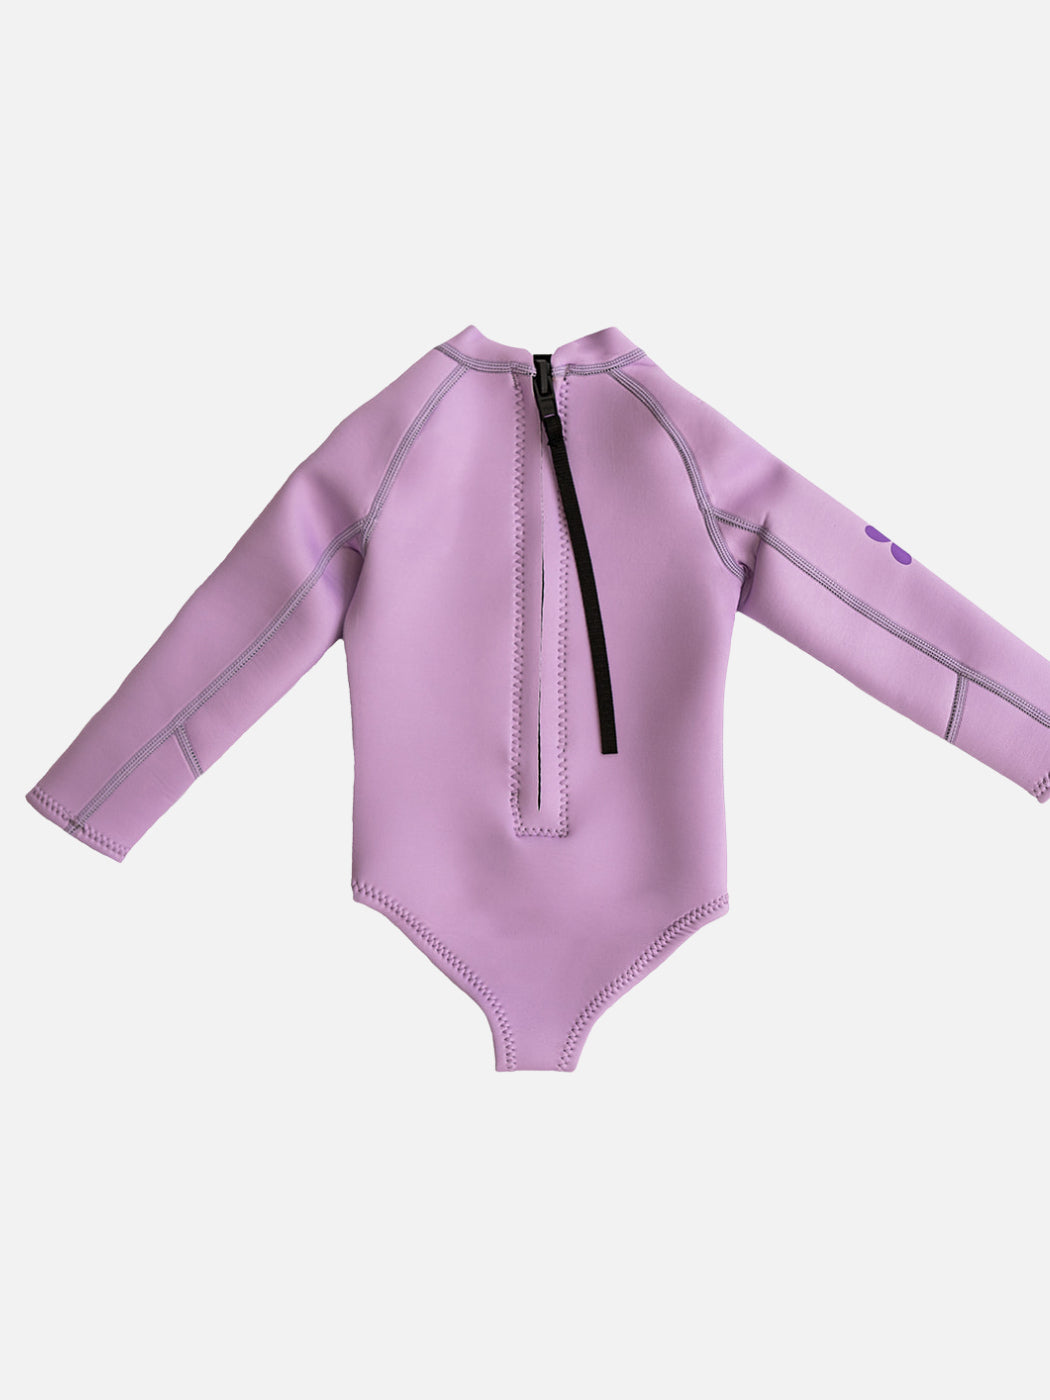 Paddle Suit Wetsuit - Lilac